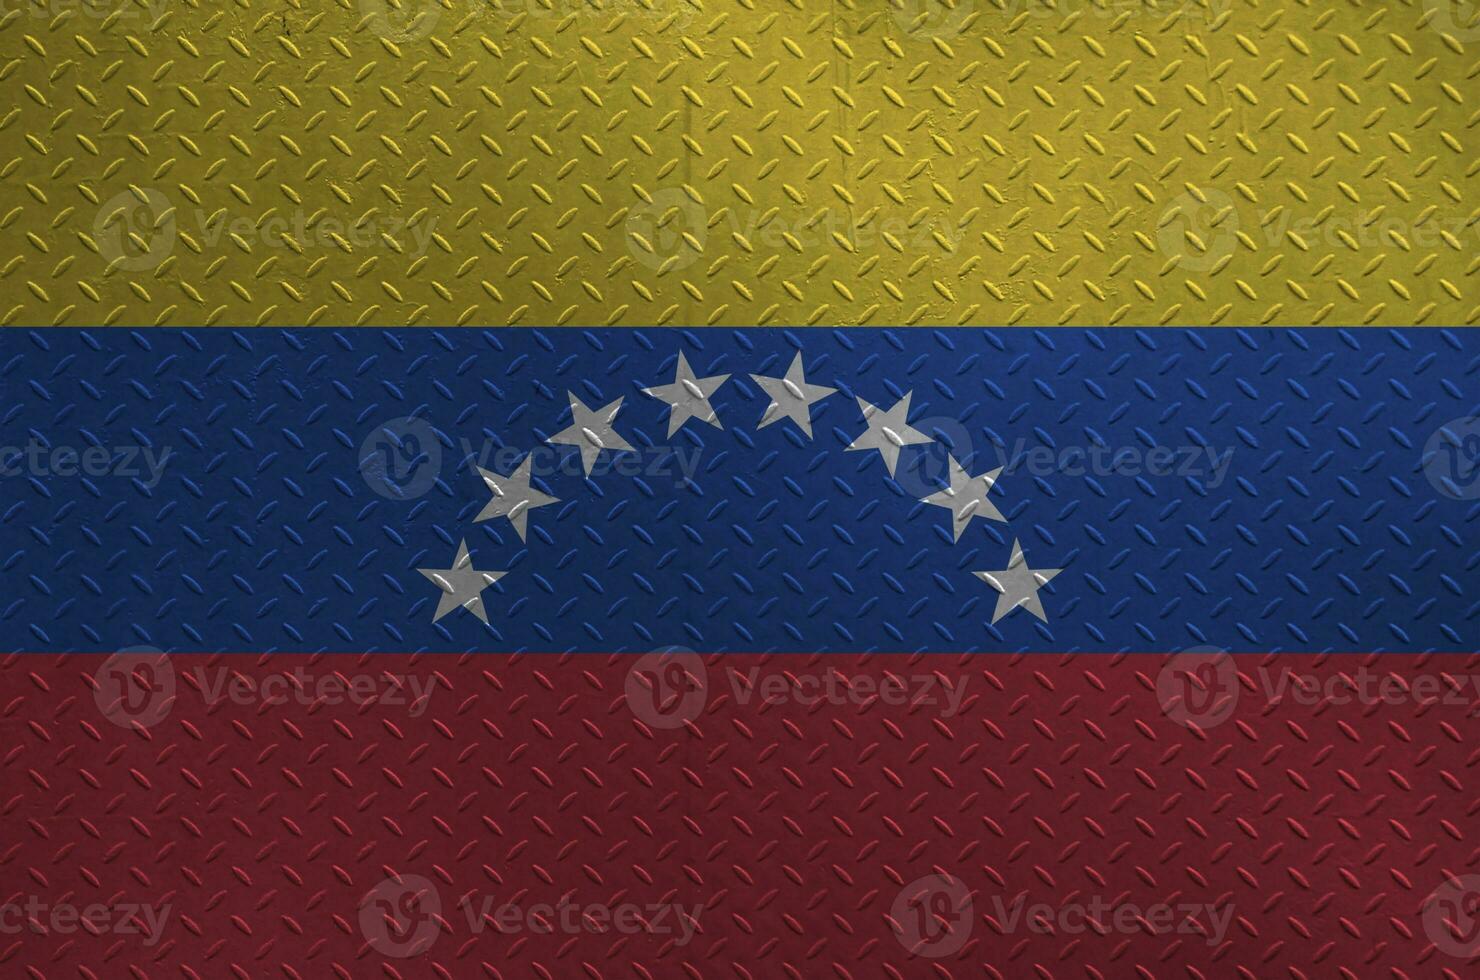 venezuela flagga avbildad i måla färger på gammal borstat metall tallrik eller vägg närbild. texturerad baner på grov bakgrund foto